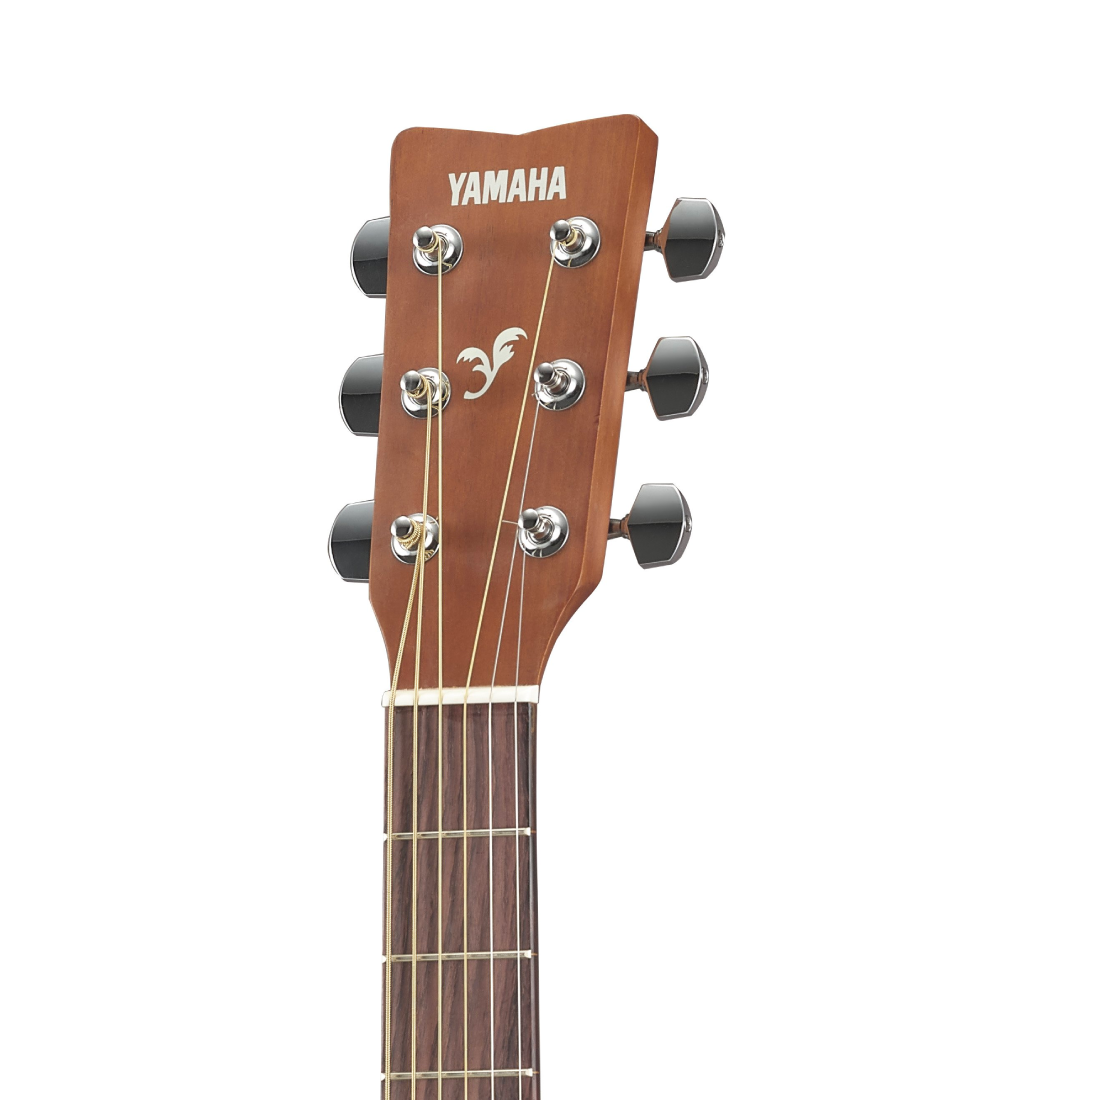 Đàn Guitar Acoustic, Guitar thùng - Yamaha F310 - Tobacco Brown Sunburst, tự tin chơi nhạc cùng F310 - Hàng chính hãng